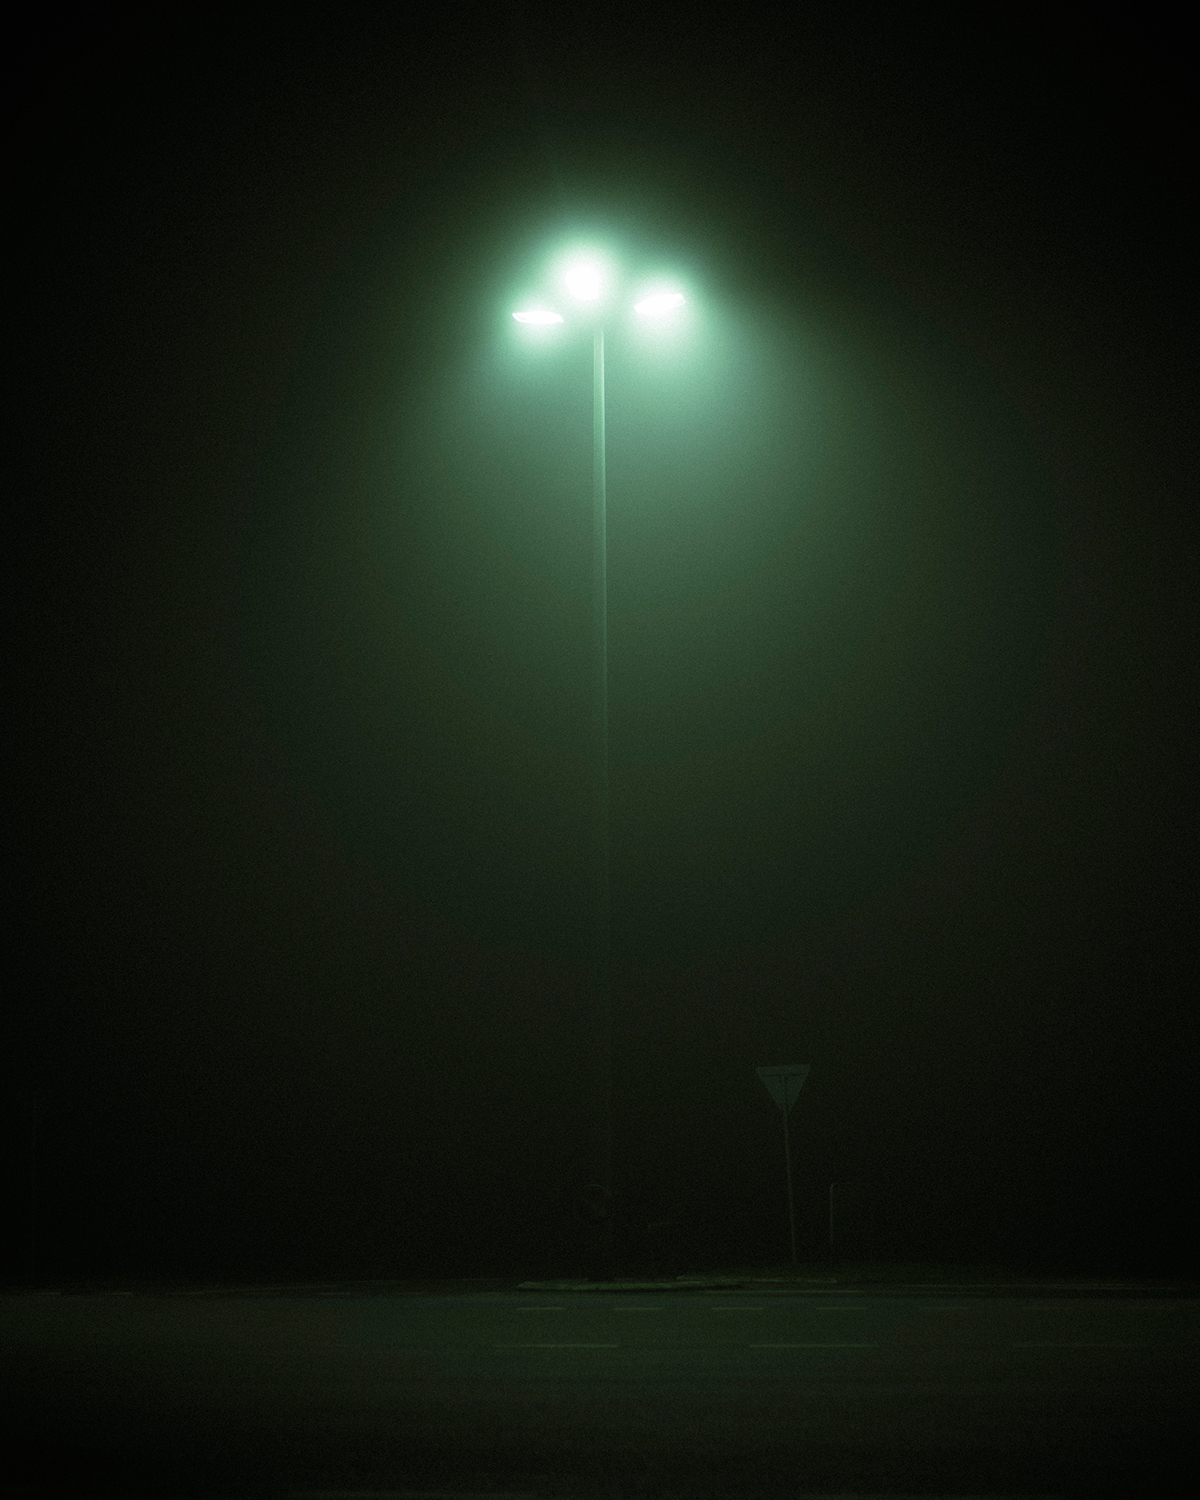 lost deserted desolate fog mist streets buildings light dark Cinema movie mood eerie abandoned